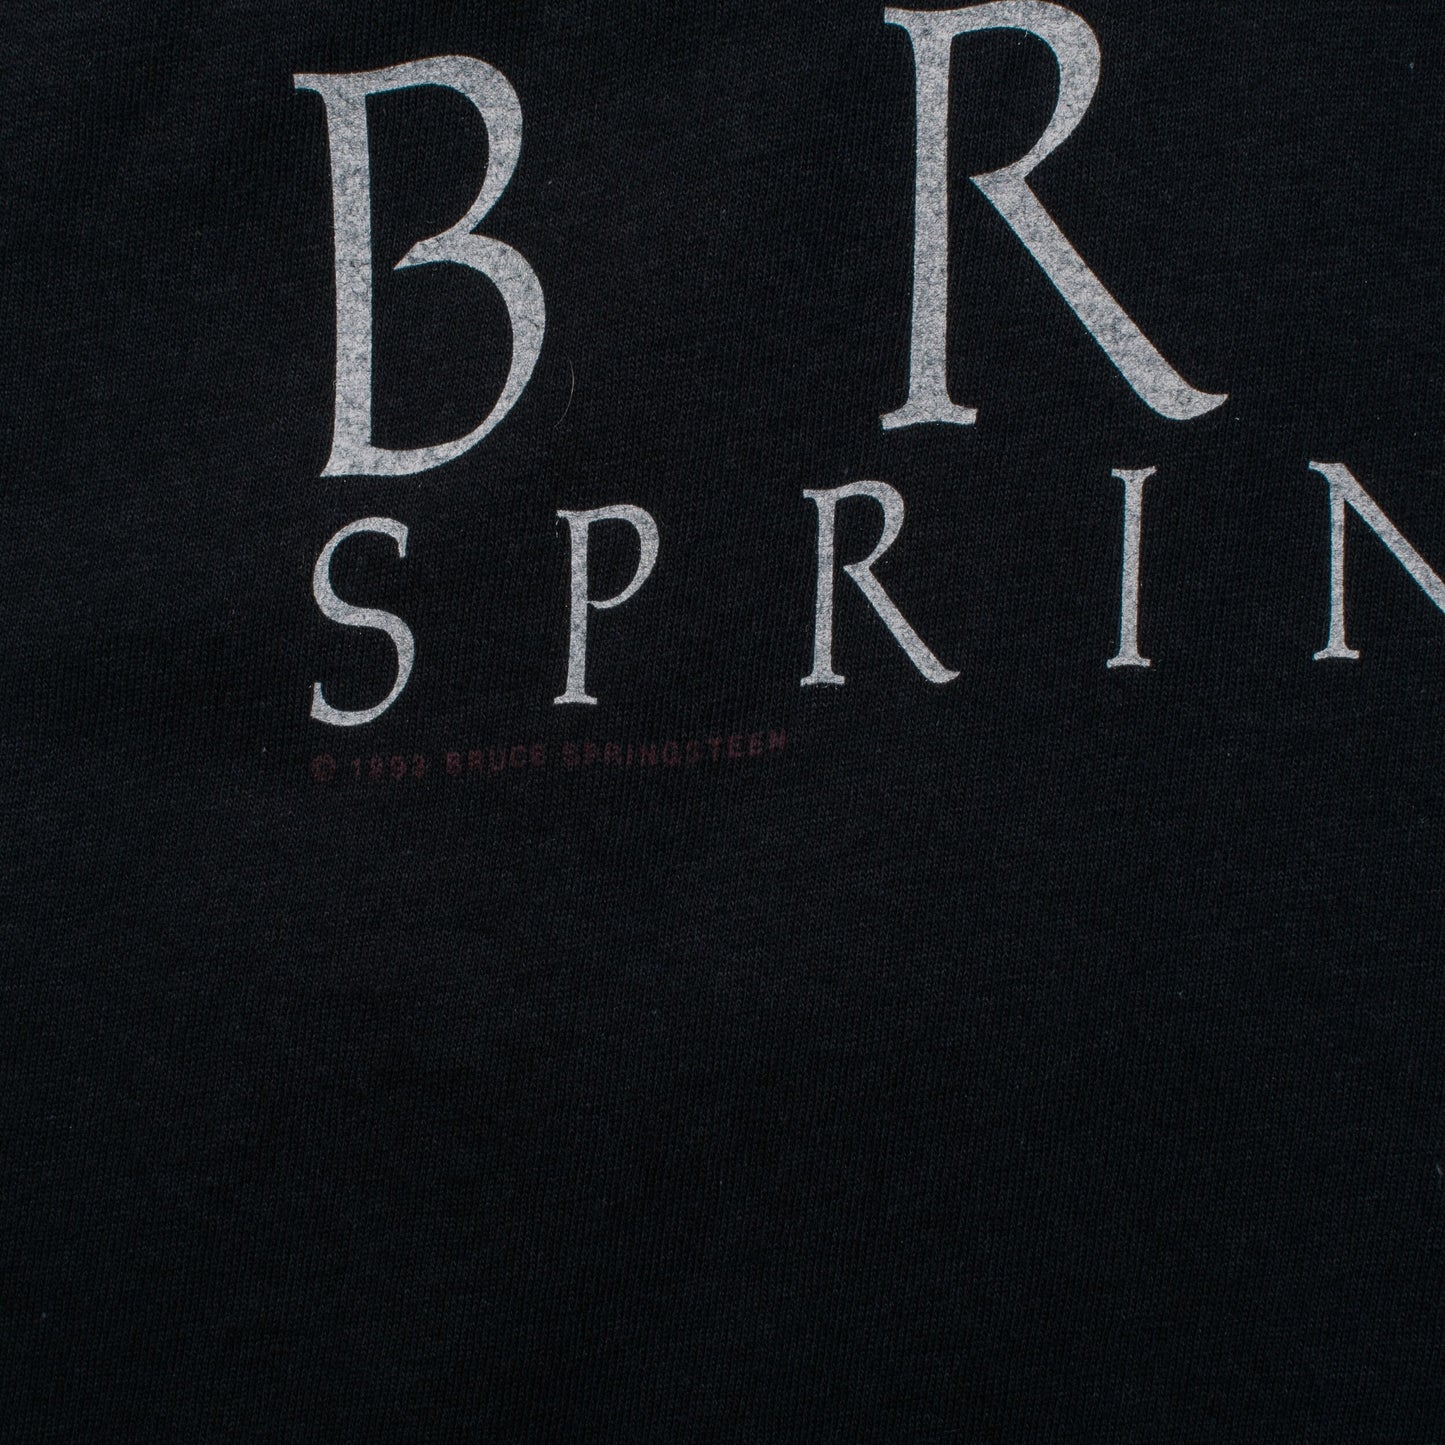 Vintage 1993 Bruce Springsteen Tour T-Shirt